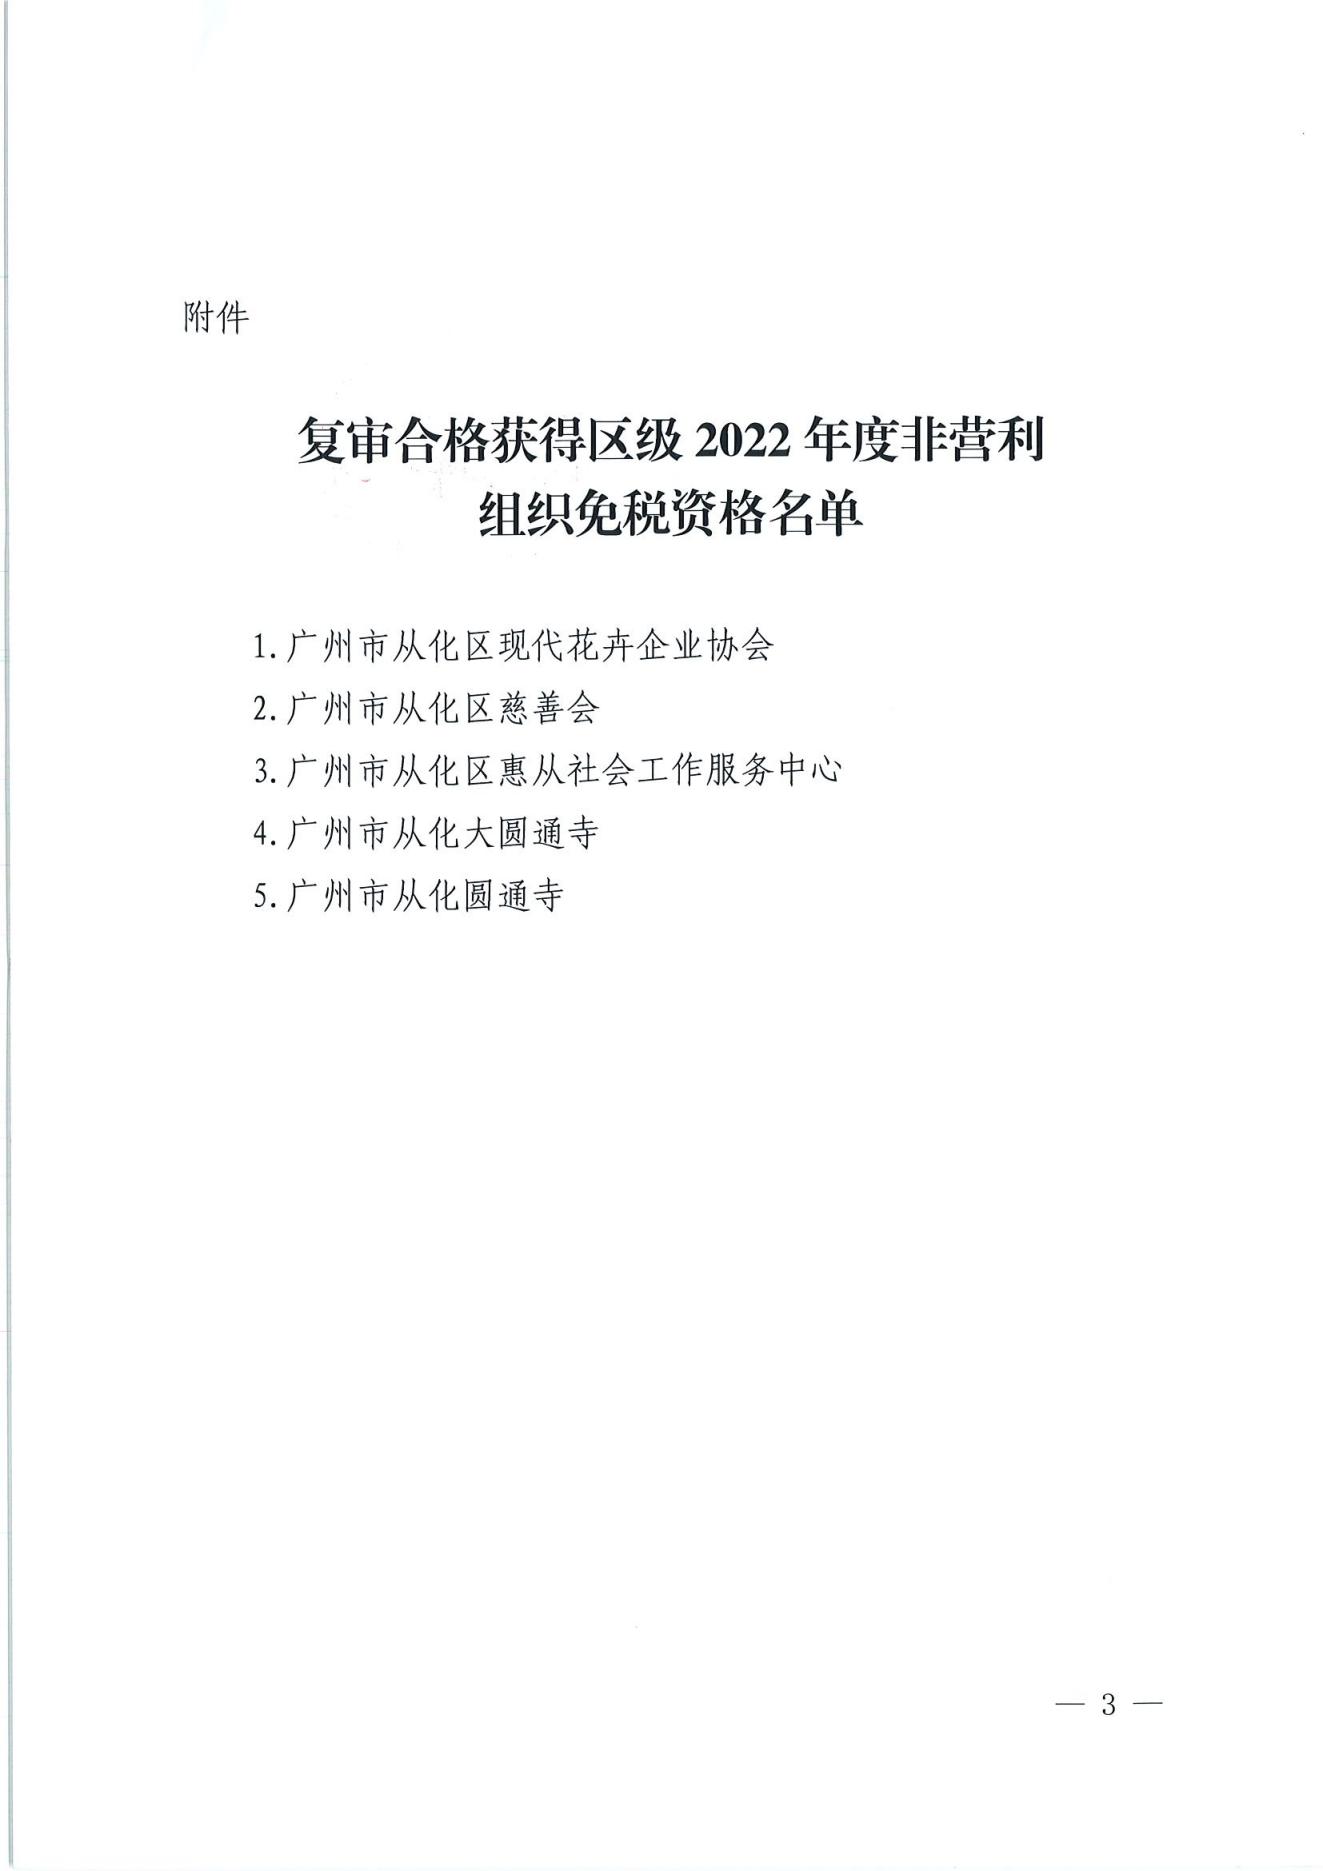 （扫描）广州市从化区财政局 国家税务总局广州市从化区税务局关于复审合格获得区级2022年度非营利组织免税资格名单的公告_02.jpg